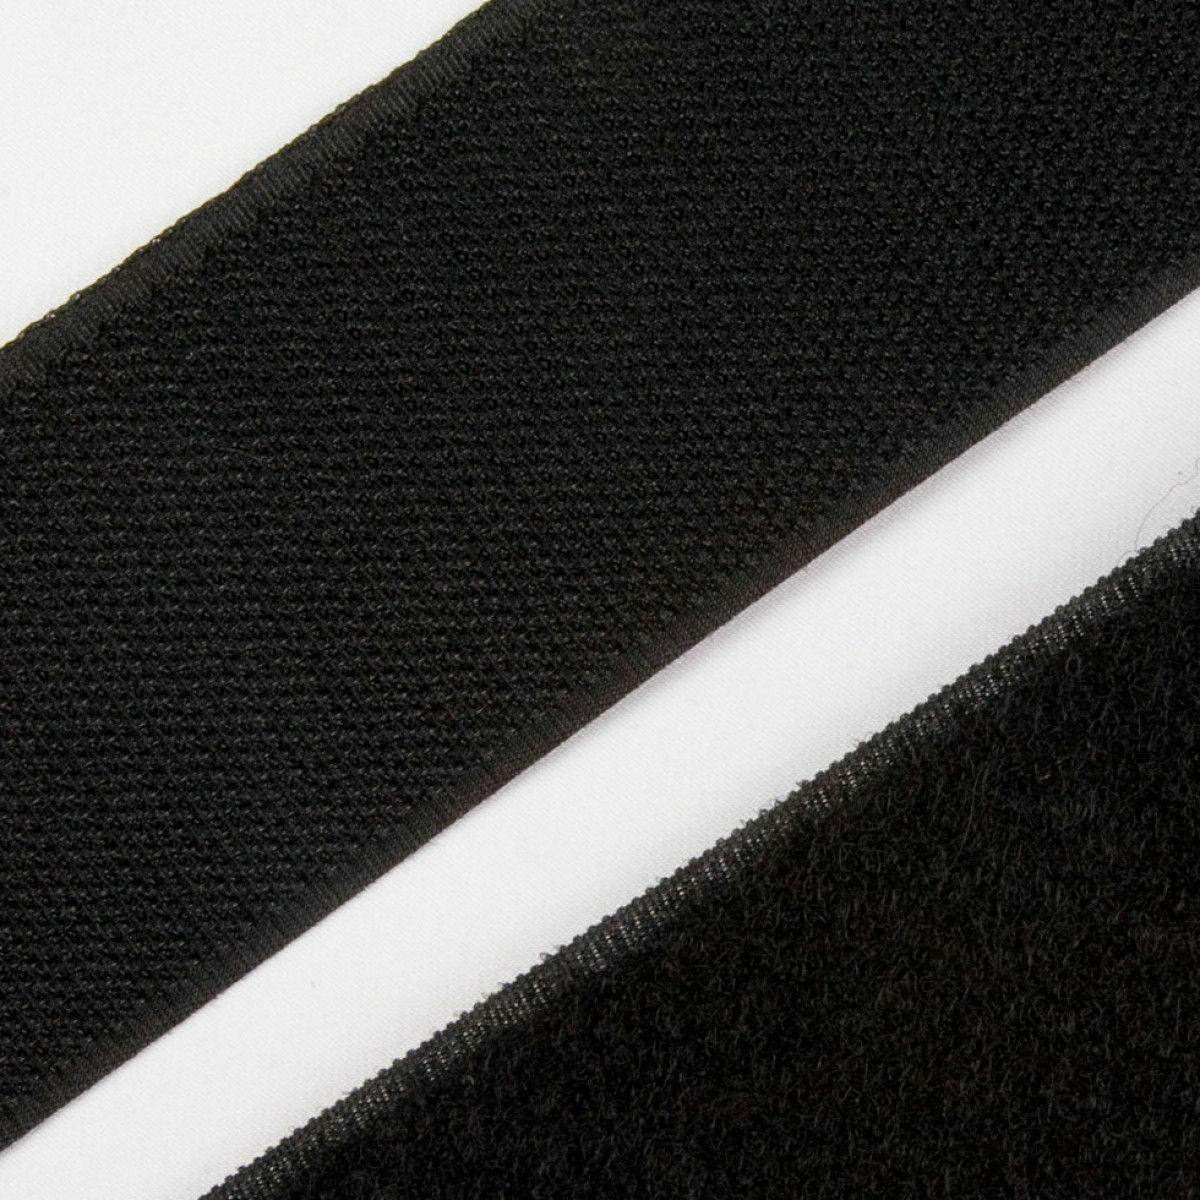 Velcro® Brand 1" Inch Wide Black Hook and Loop - Sew On Type - 5 FEET - Uncut